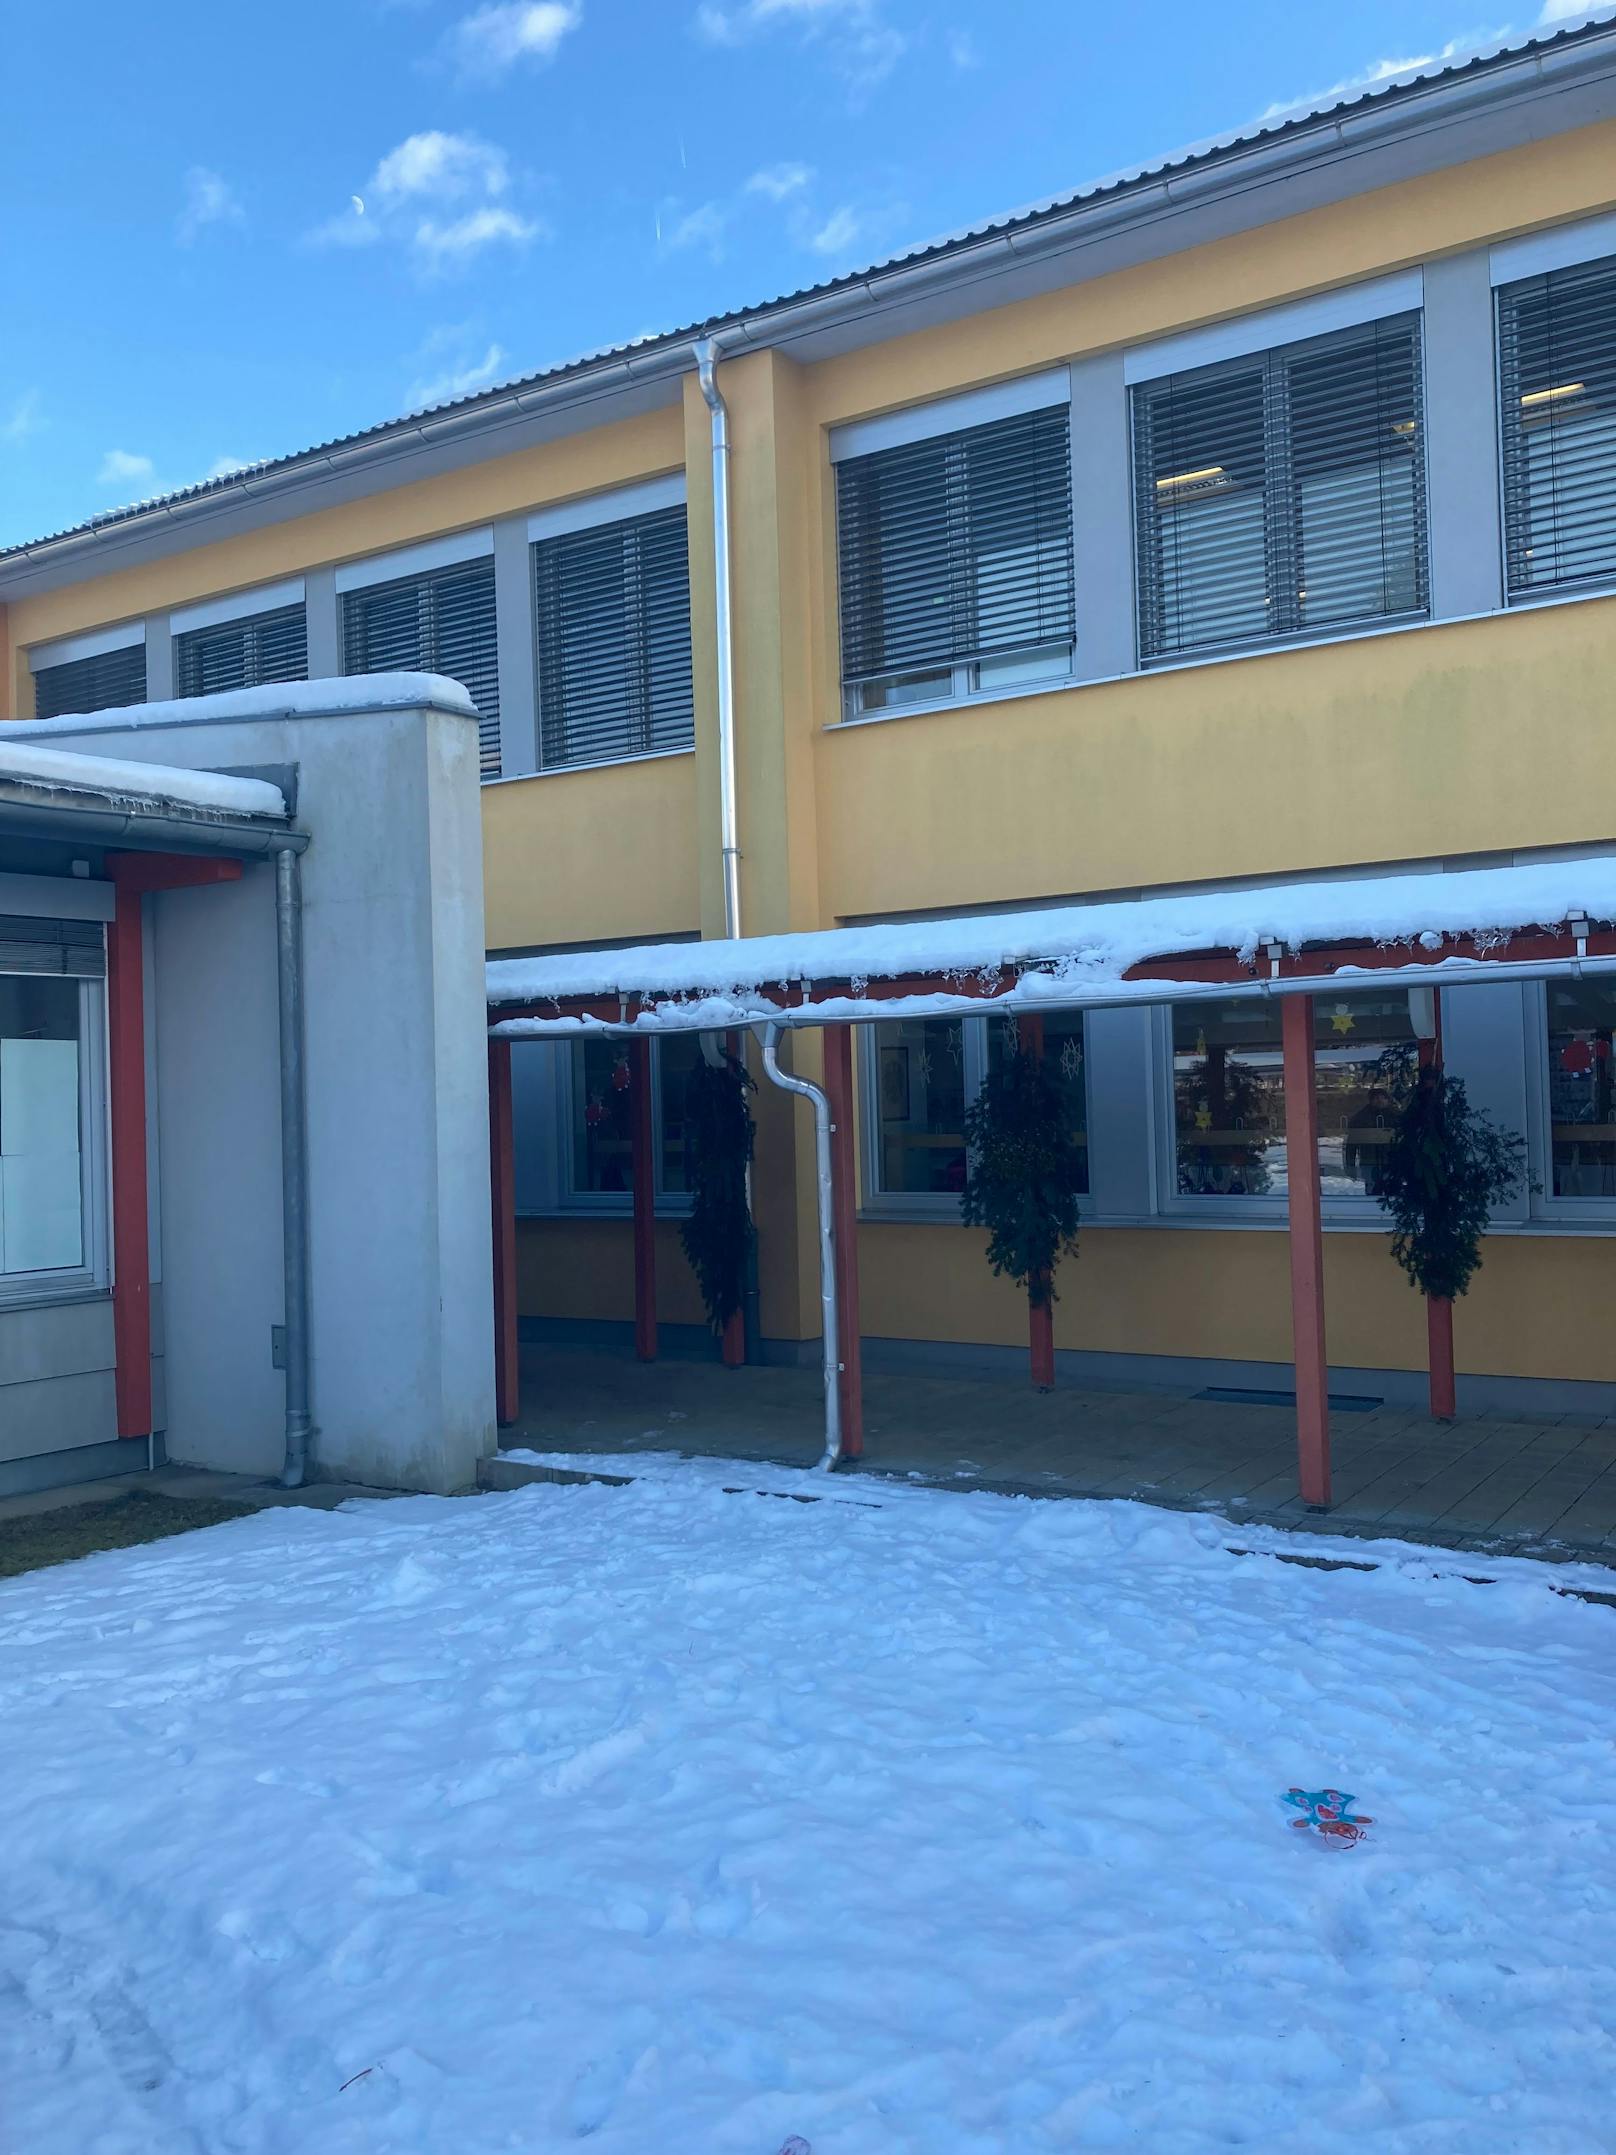 Unfassbarer Vorfall im Bezirk Völkermarkt! Unbekannte Täter haben vor Schulbeginn die Gebäude eines Schulkomplexes zerstört.